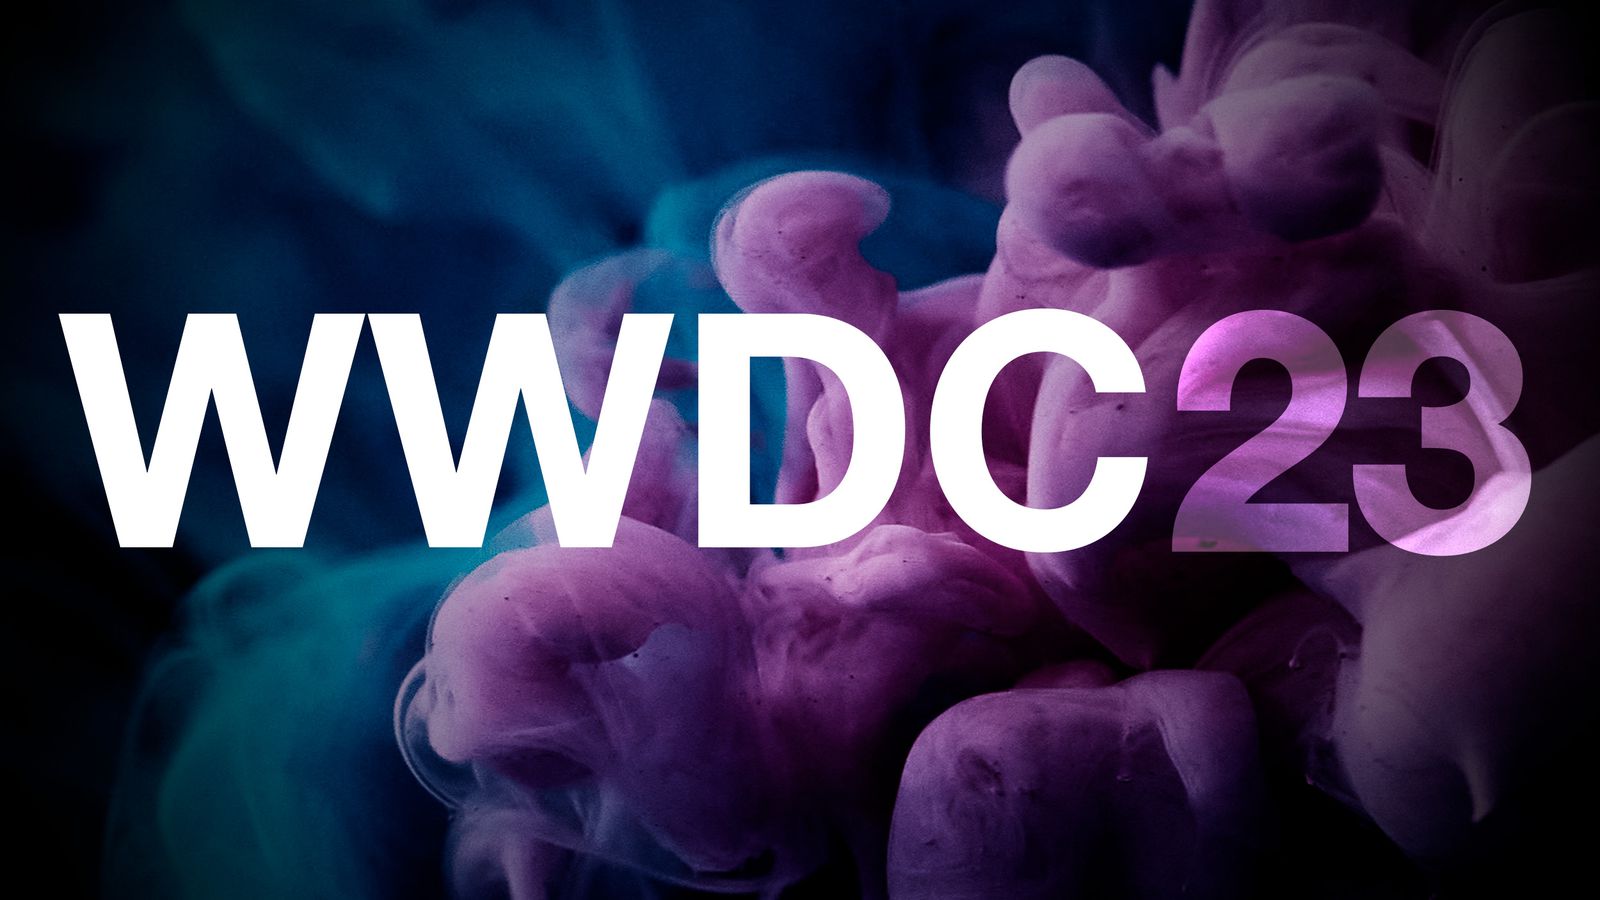 کنفرانس WWDC 2023 اپل احتمالاً 15 خردادماه برگزار می‌شود